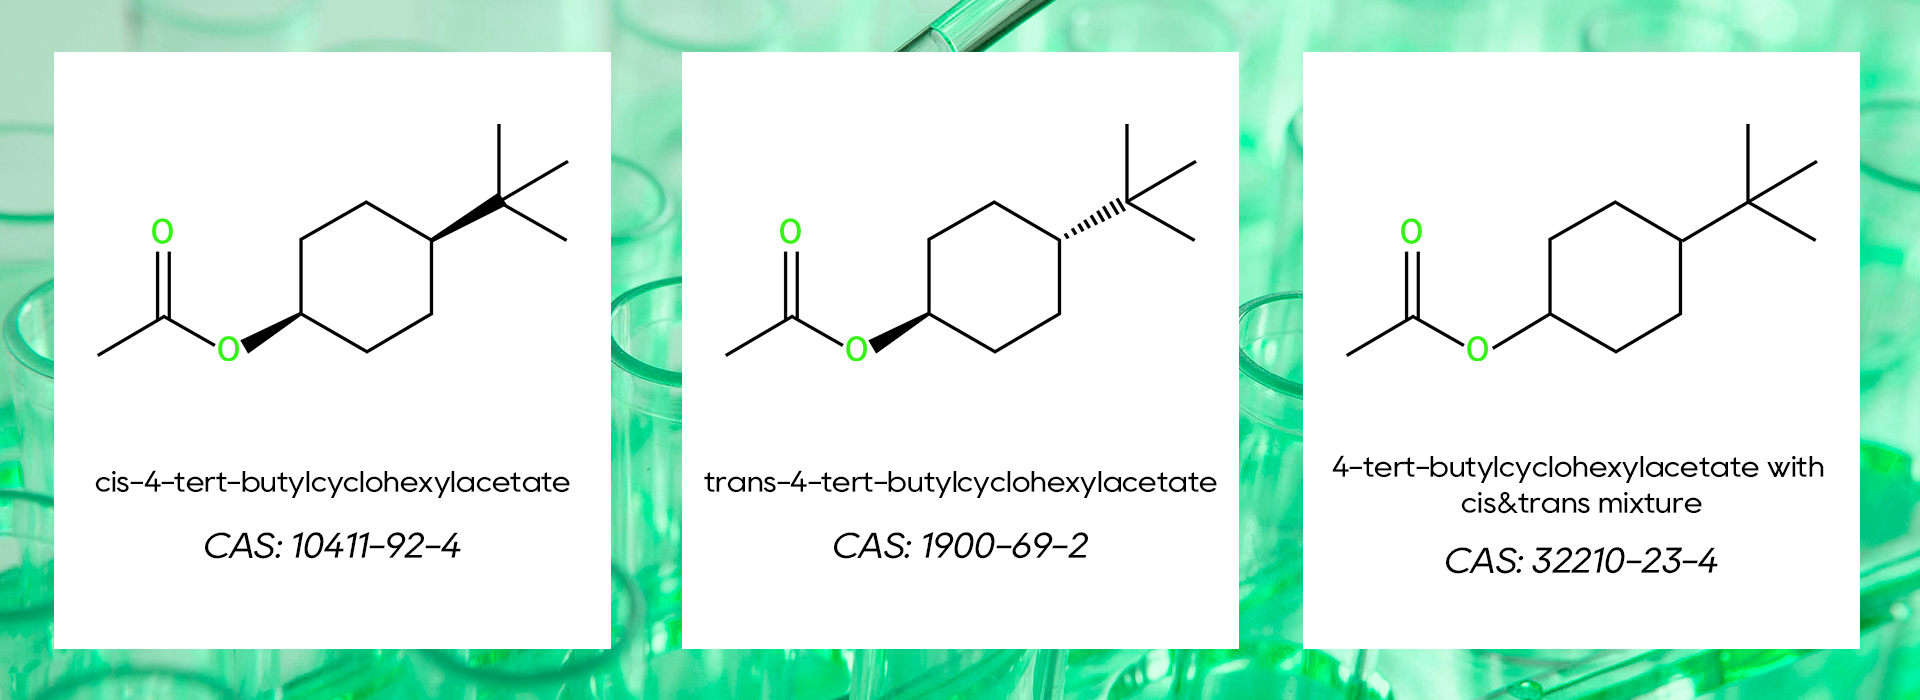 উচ্চ-বিশুদ্ধতা উডি অ্যাসিটেট (cis-4-tert-butylcyclohexylacetate) চালু করা হয়েছে!